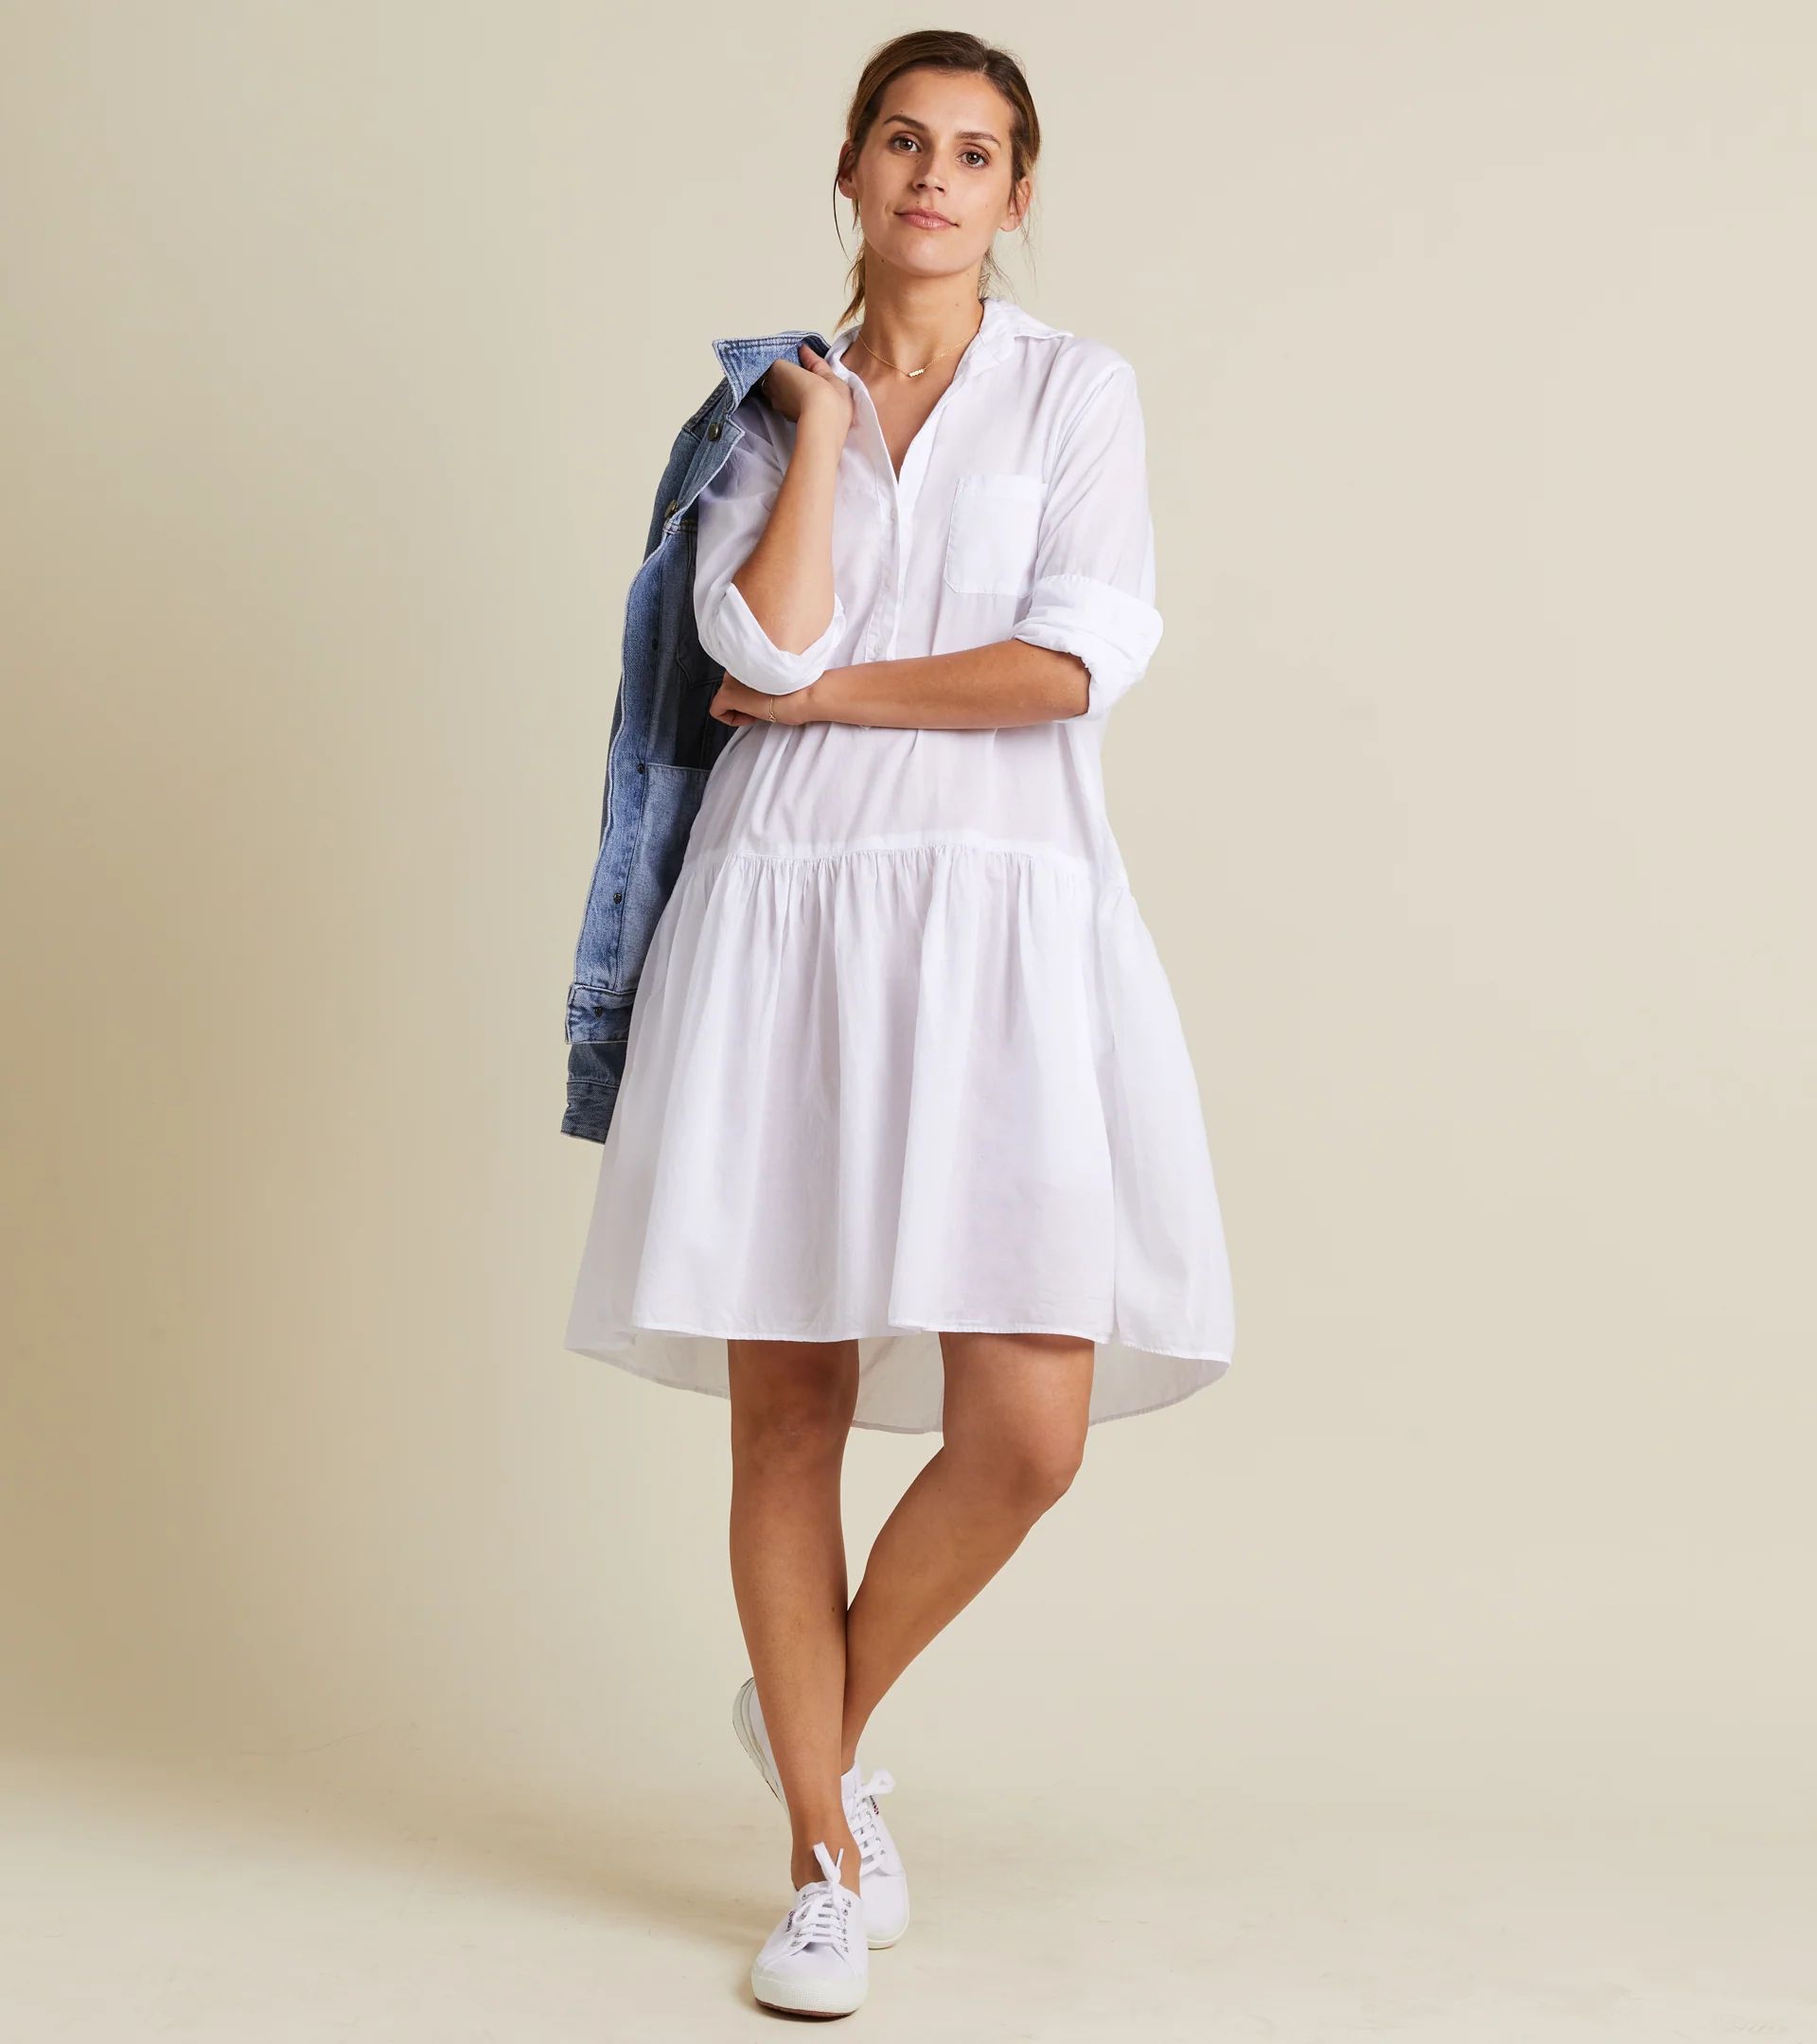 The Changemaker Dress White, Tissue Cotton | Grayson